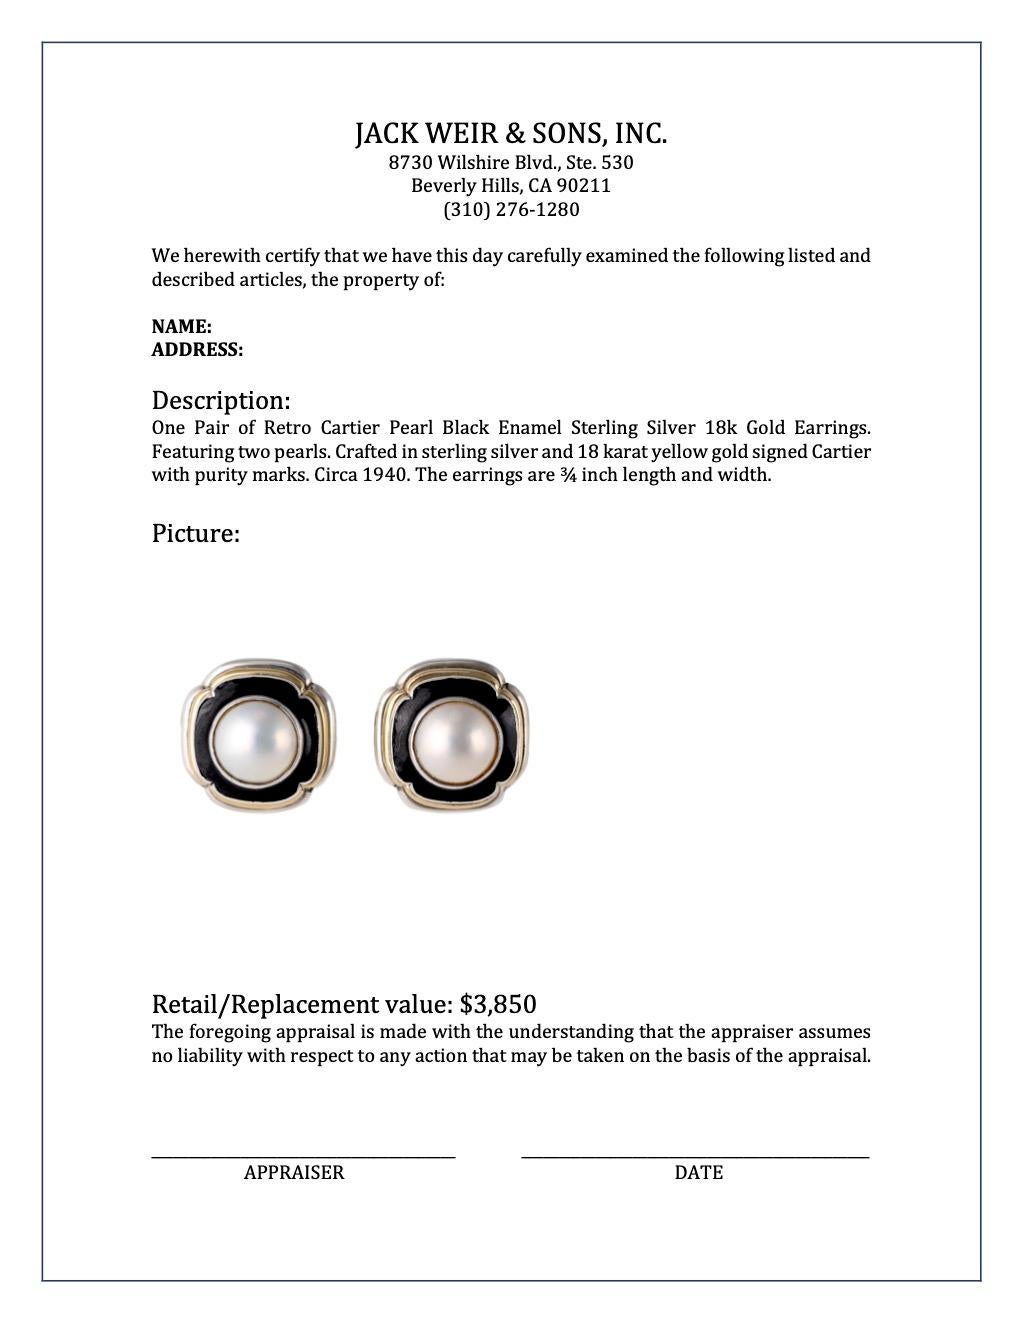 Retro Cartier Pearl Black Enamel Sterling Silver 18k Gold Earrings 2